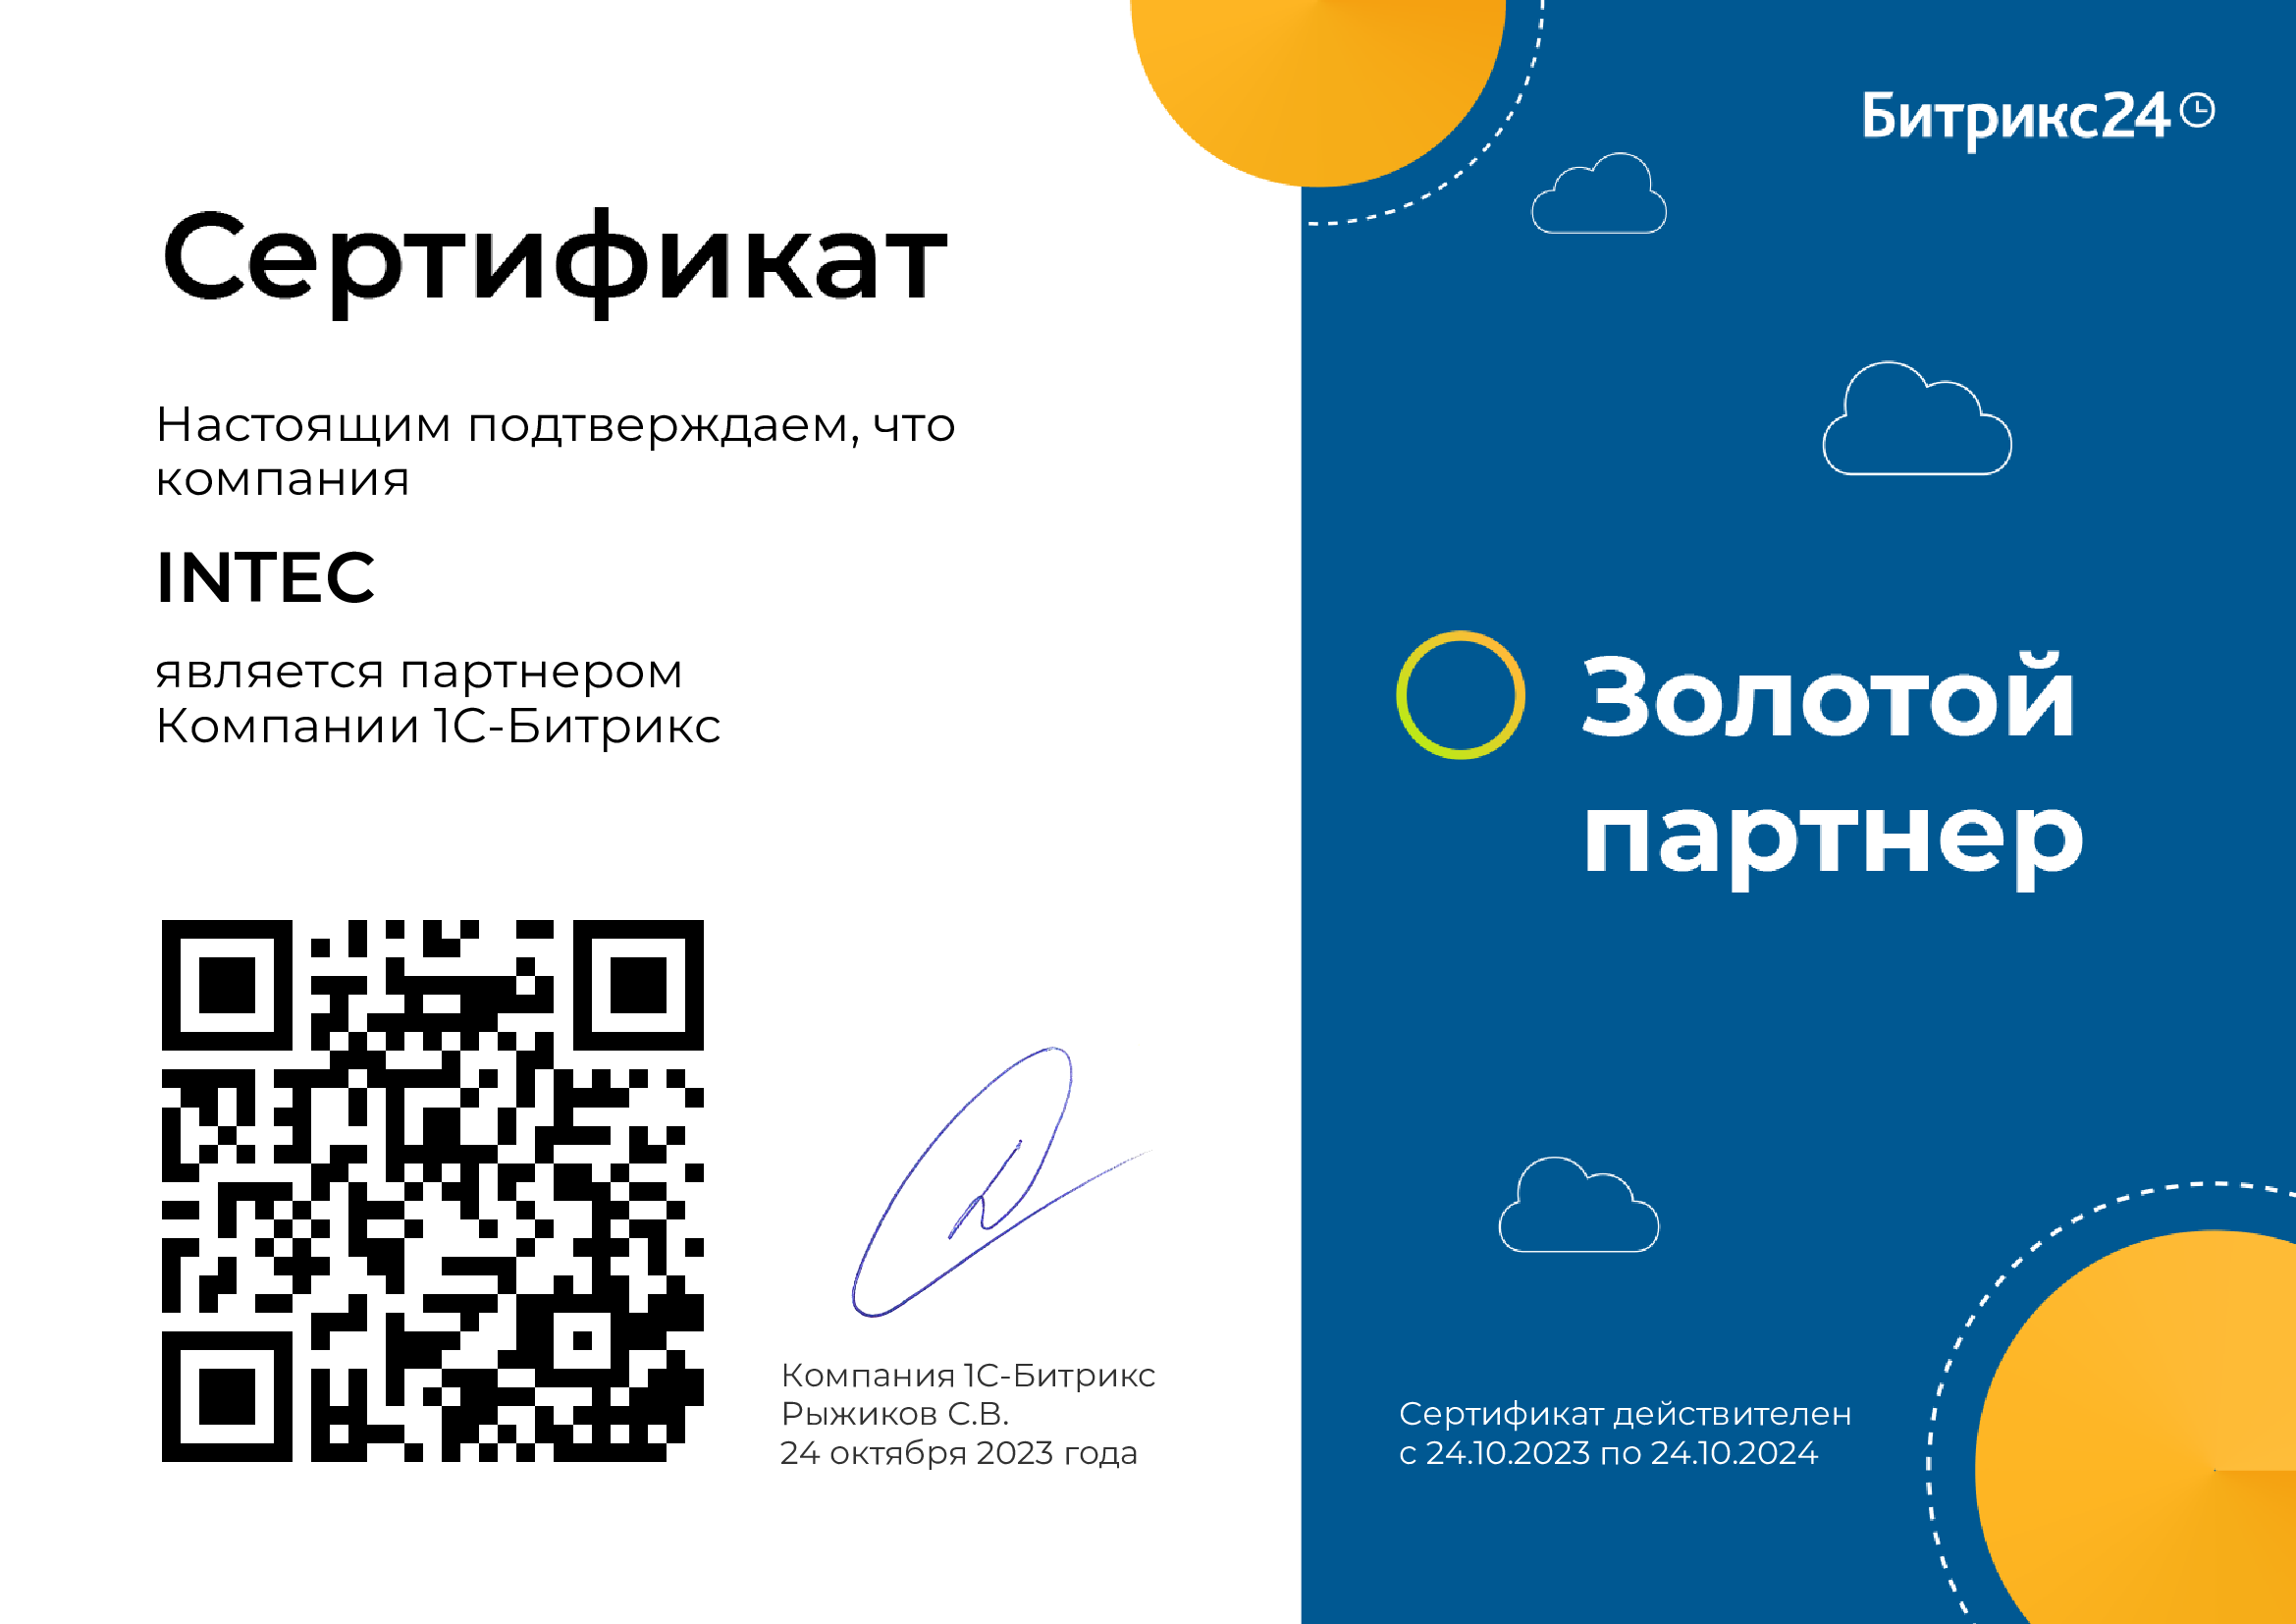 INTEC — золотой сертифицированный партнер «Битрикс24»